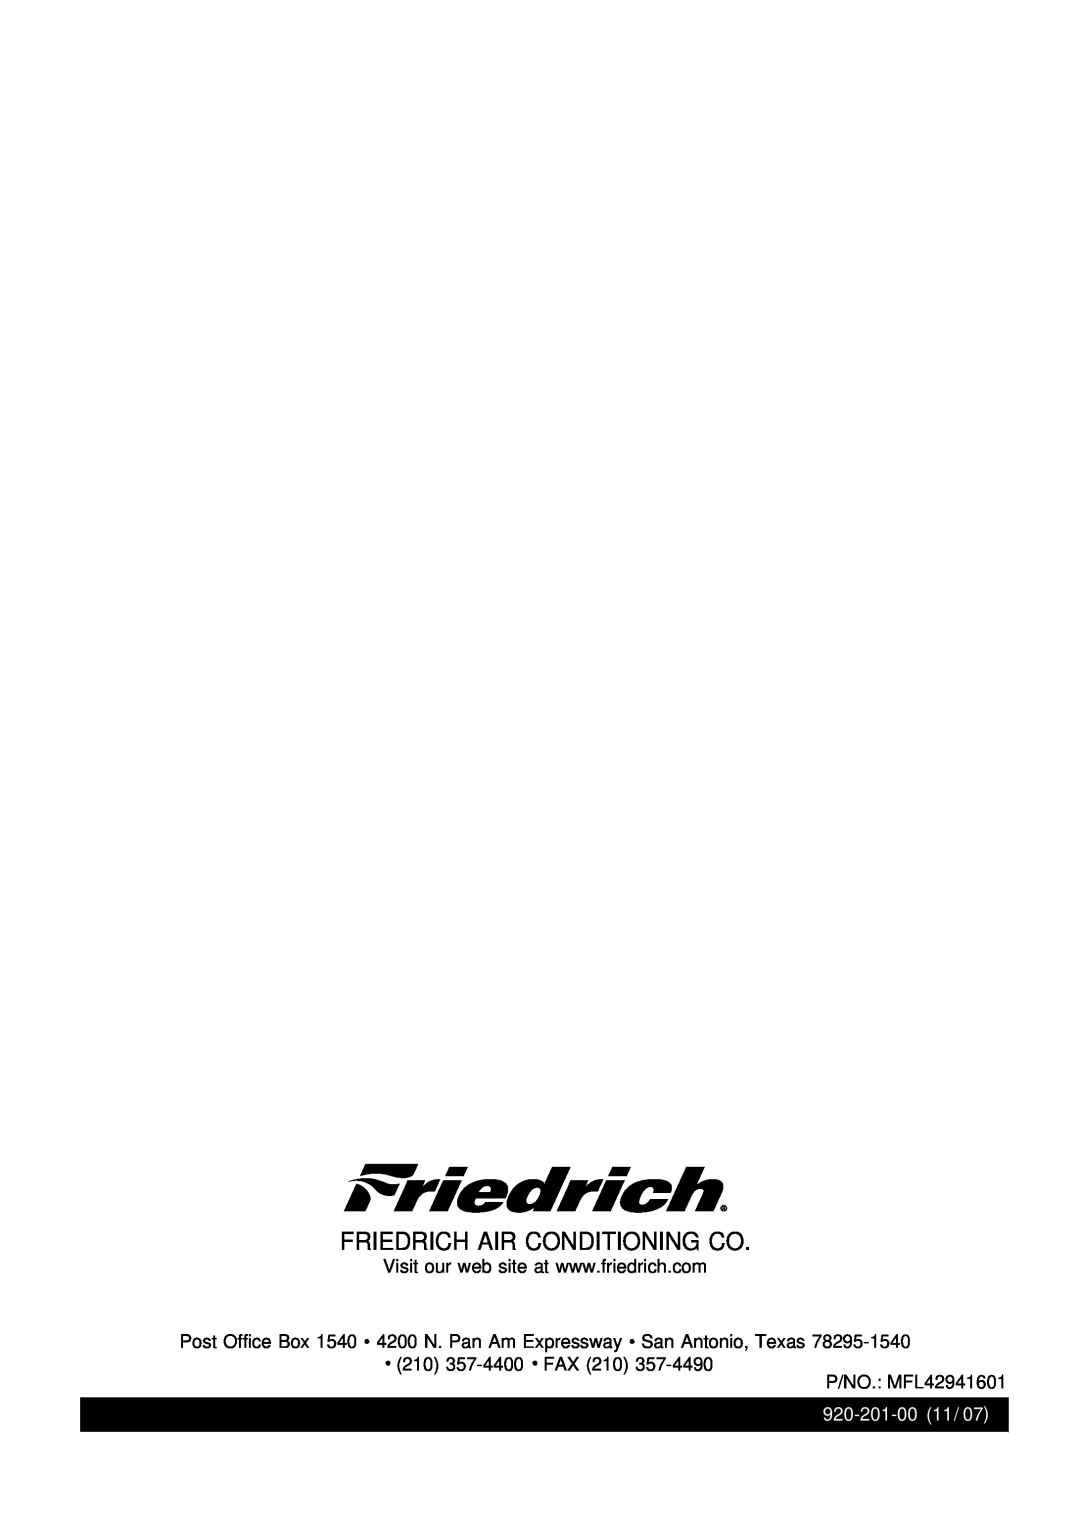 Friedrich CP12, CP10 manual Friedrich Air Conditioning Co, Post Office Box 1540 4200 N. Pan Am Expressway San Antonio, Texas 